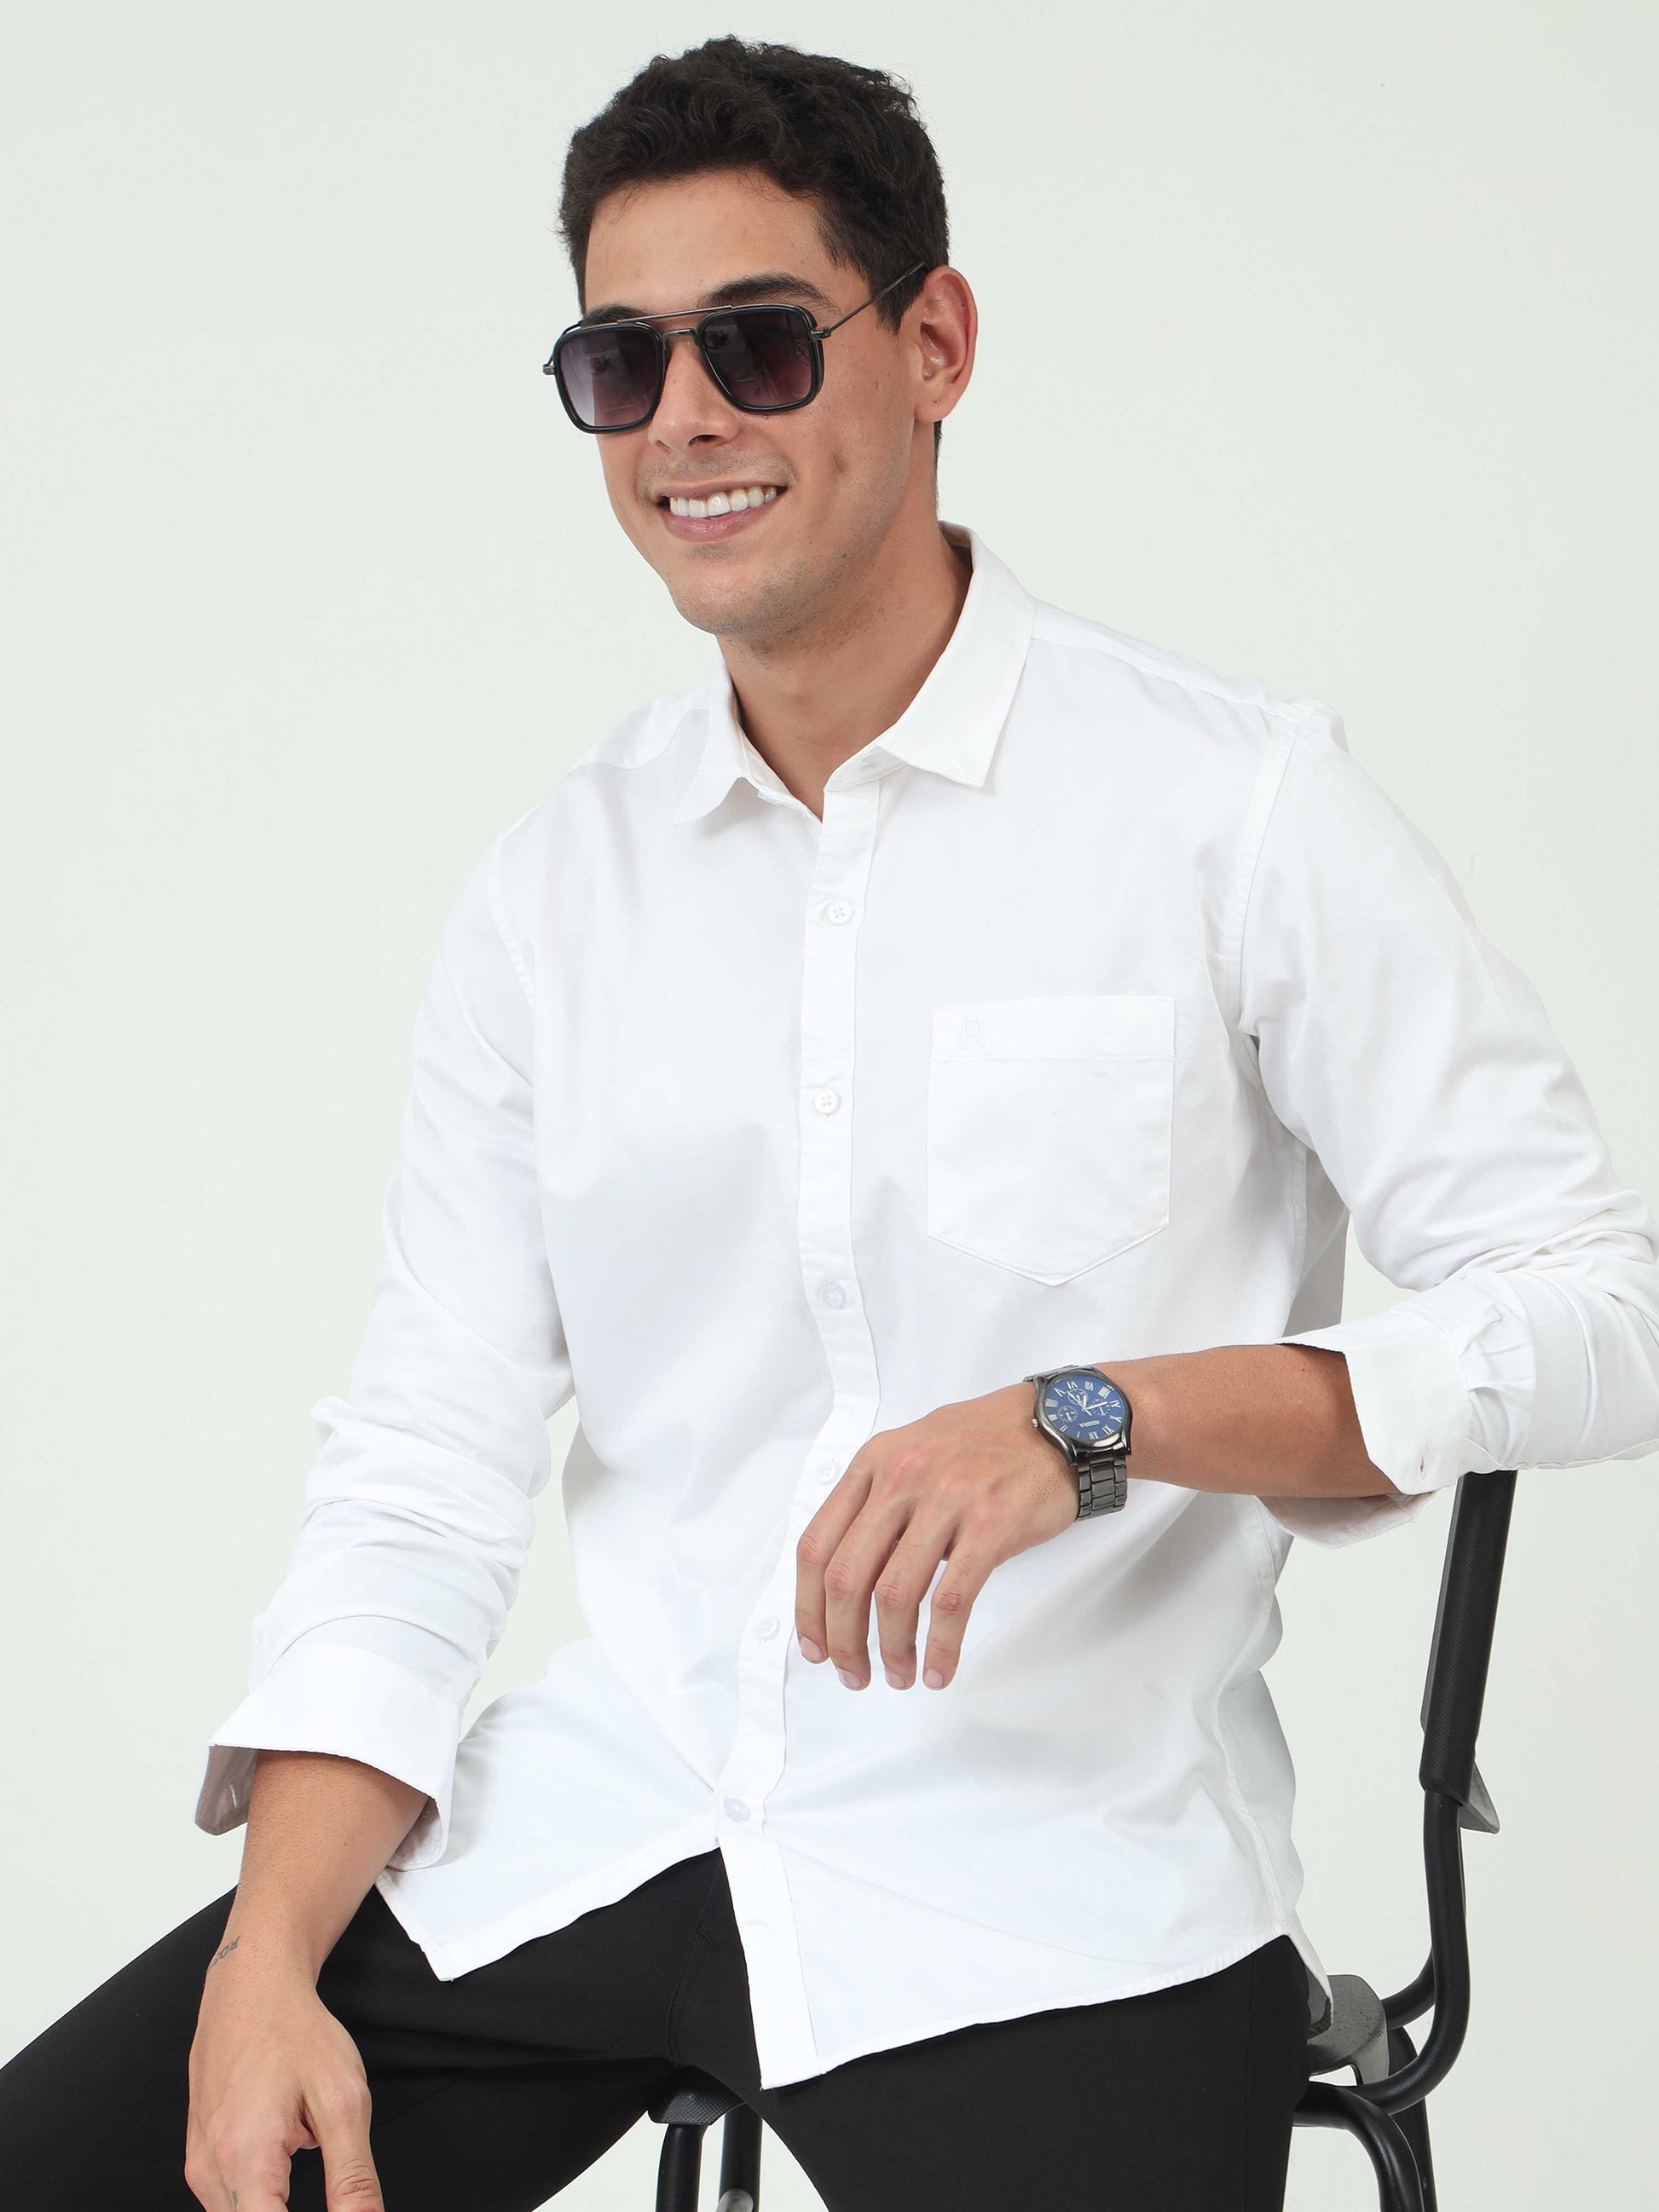 One-tone White Satin shirt for Men 